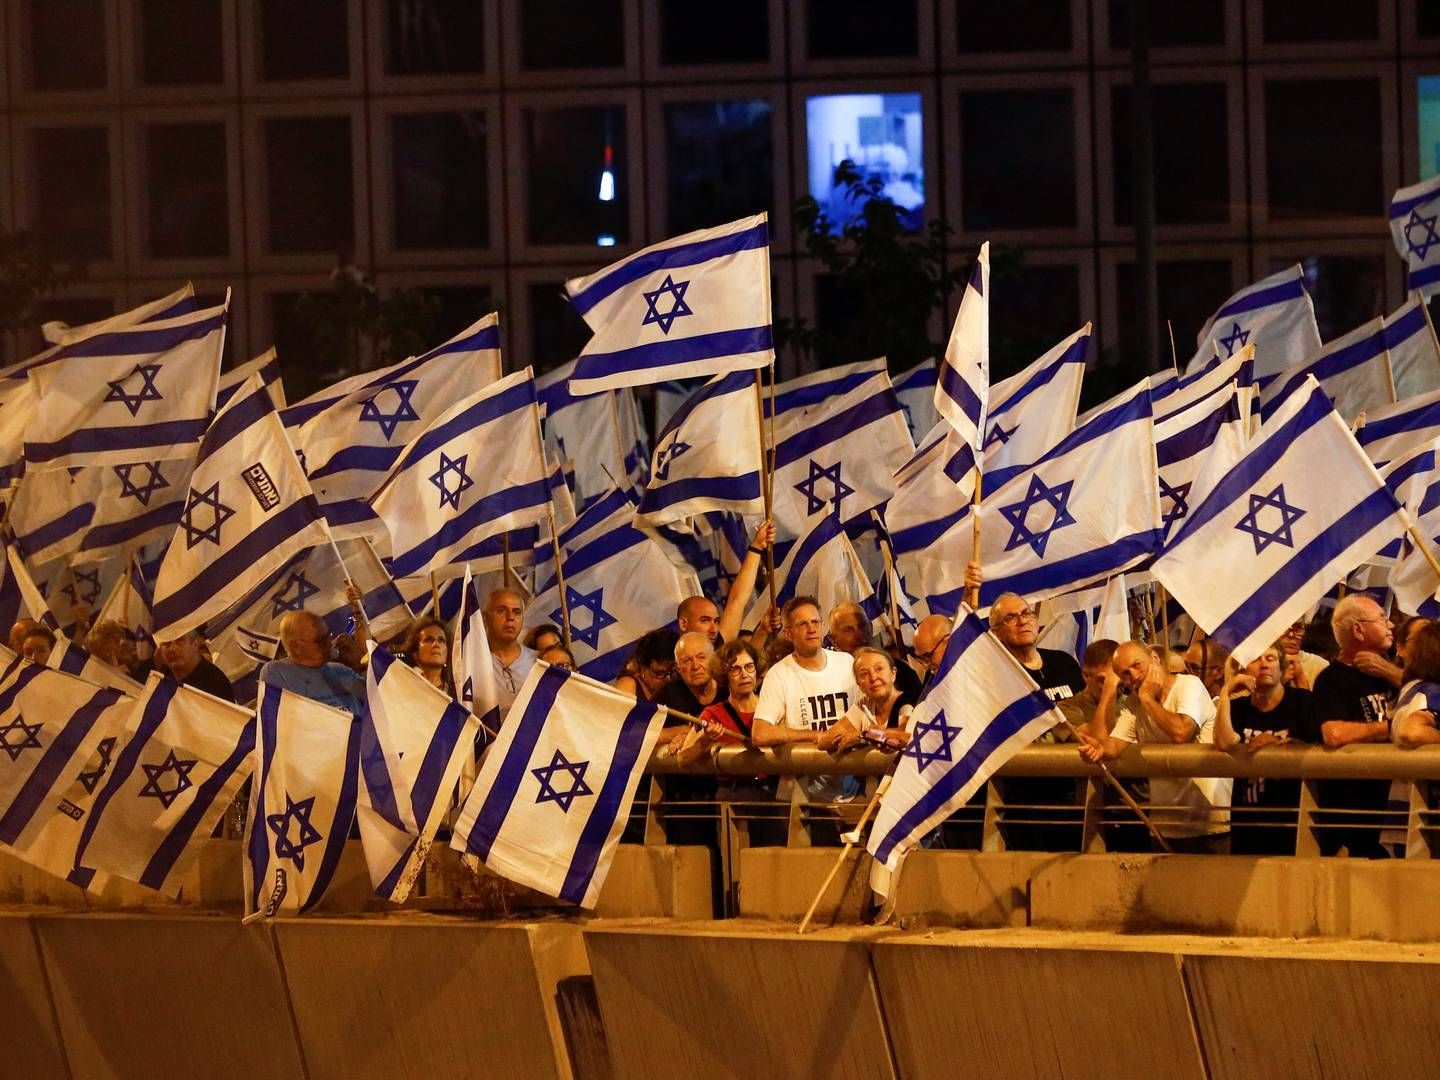 Igen lørdag var der store demonstrationer mod retsreformen i Tel Aviv. Israelske medier anslår, at 150.000 mennesker var på gaden. | Foto: Corinna Kern/Reuters/Ritzau Scanpix